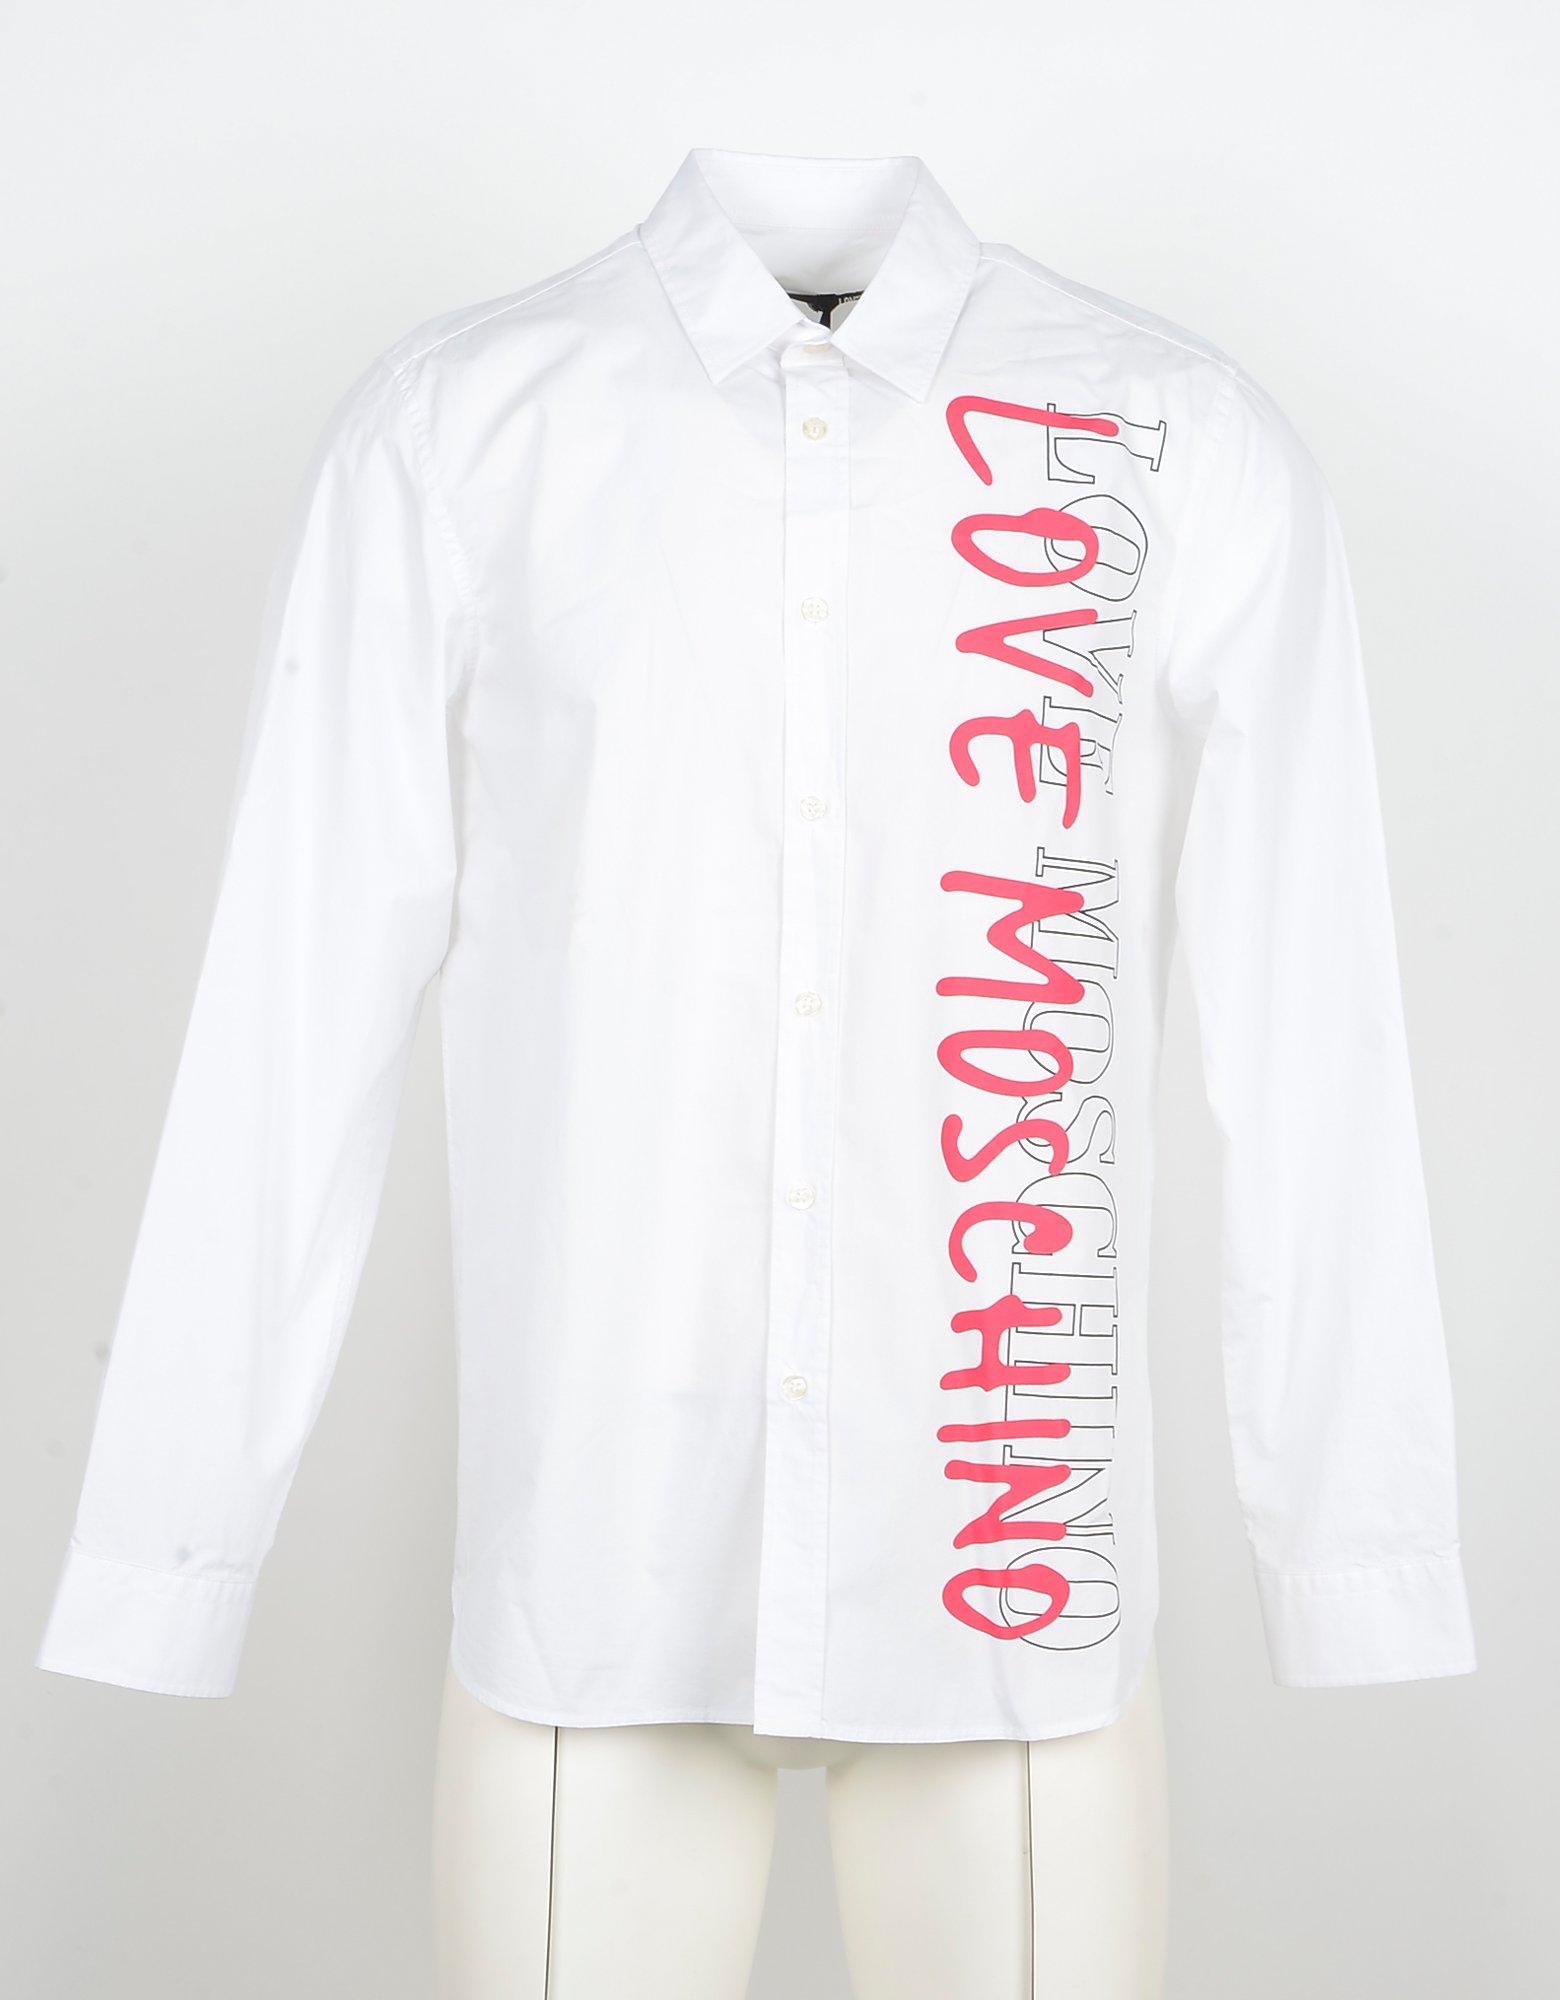 love moschino shirt mens